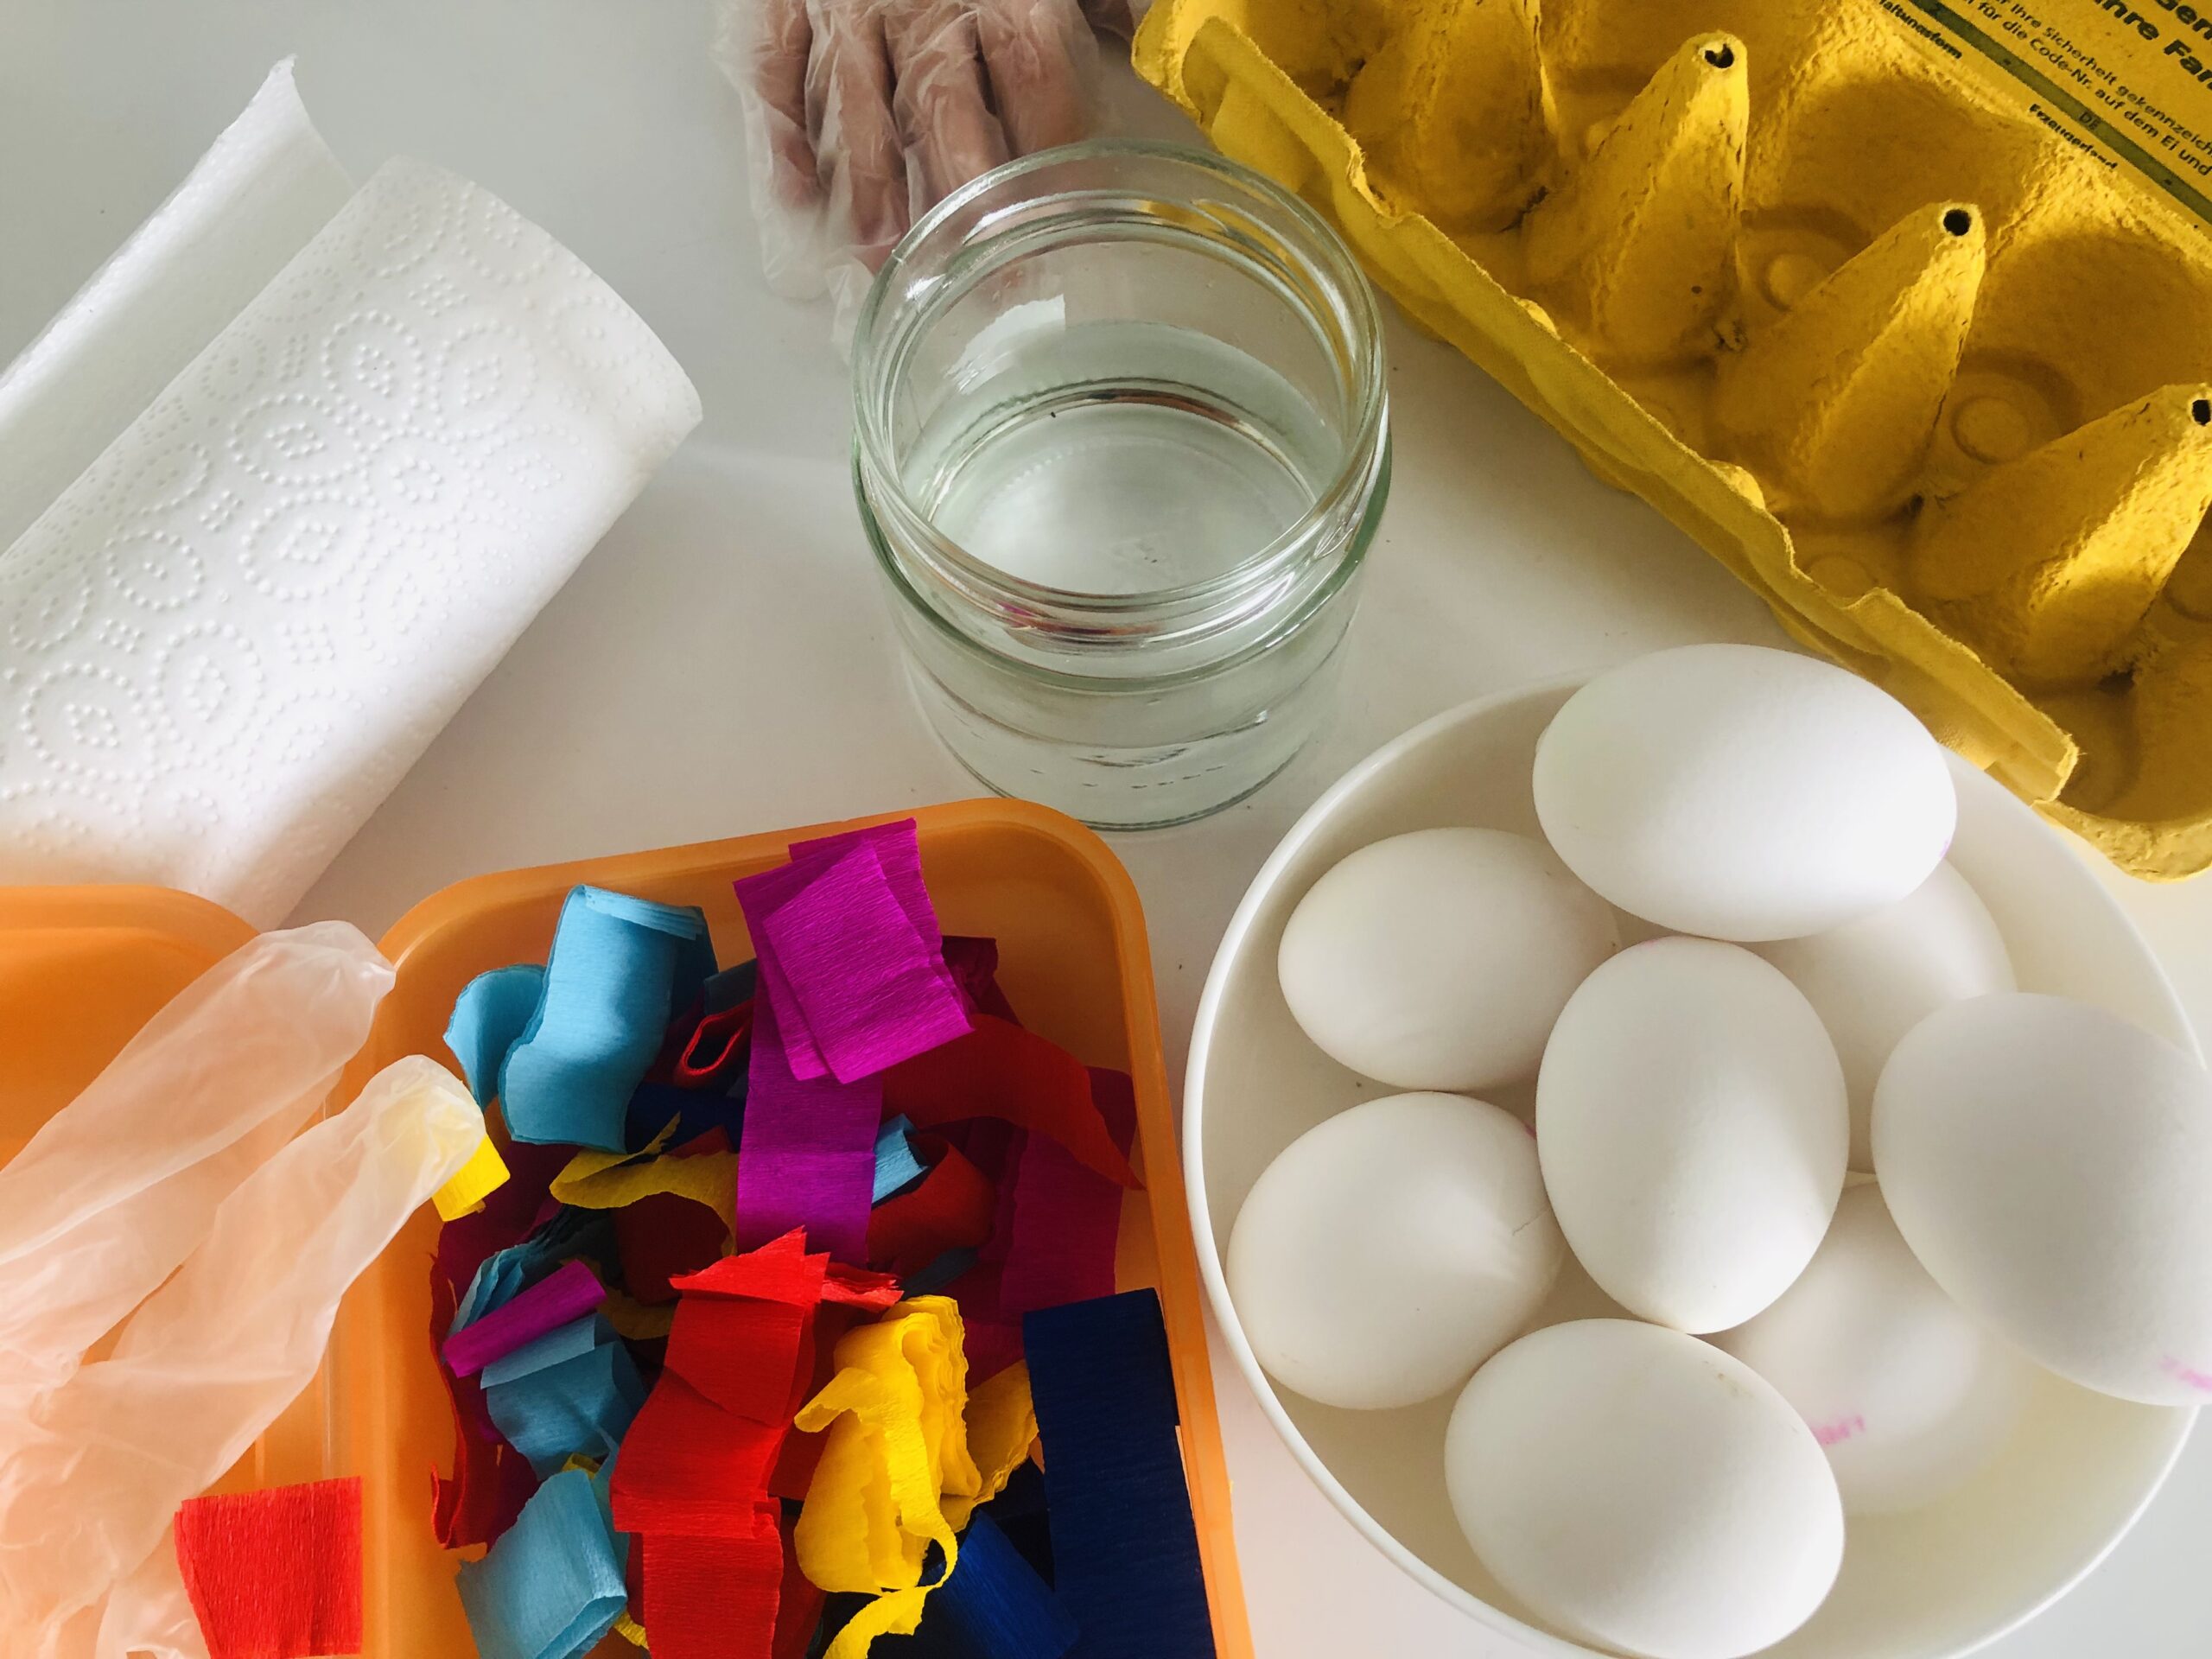 Bild zum Schritt 1 für das Bastel- und DIY-Abenteuer für Kinder: 'Kocht zuerst die Eier (Anleitung zum Eierkochen) und...'